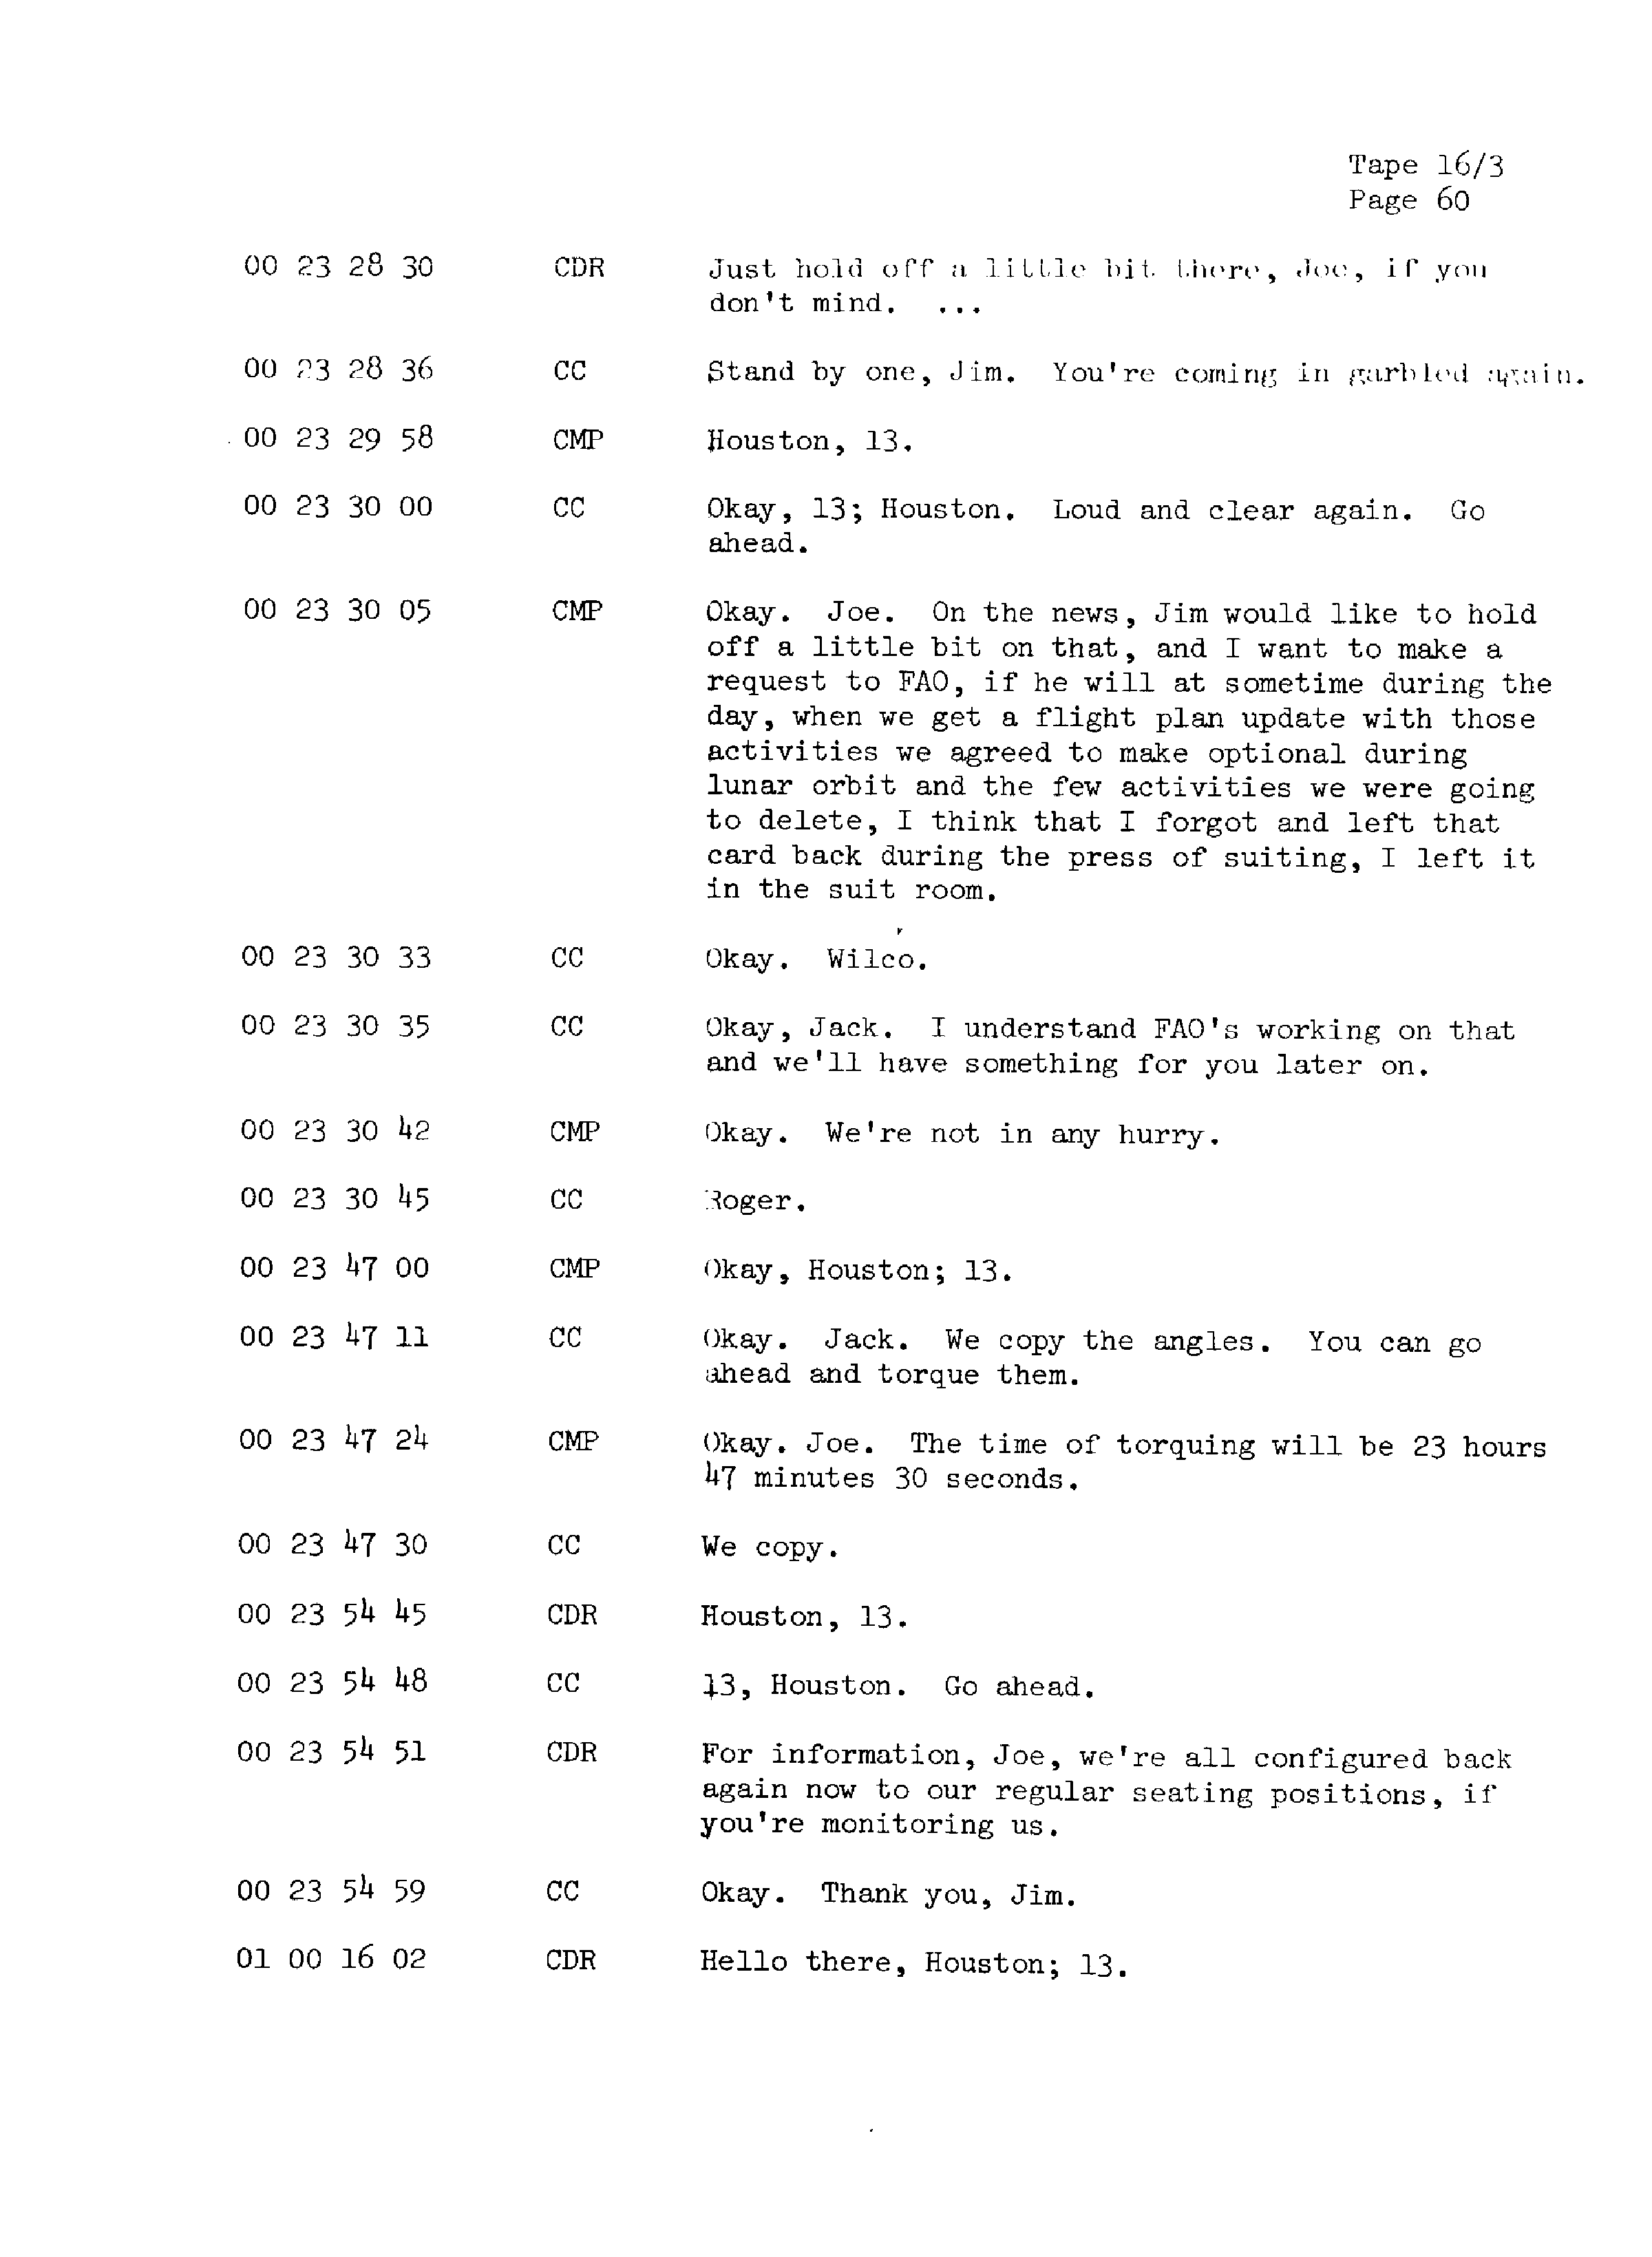 Page 67 of Apollo 13’s original transcript